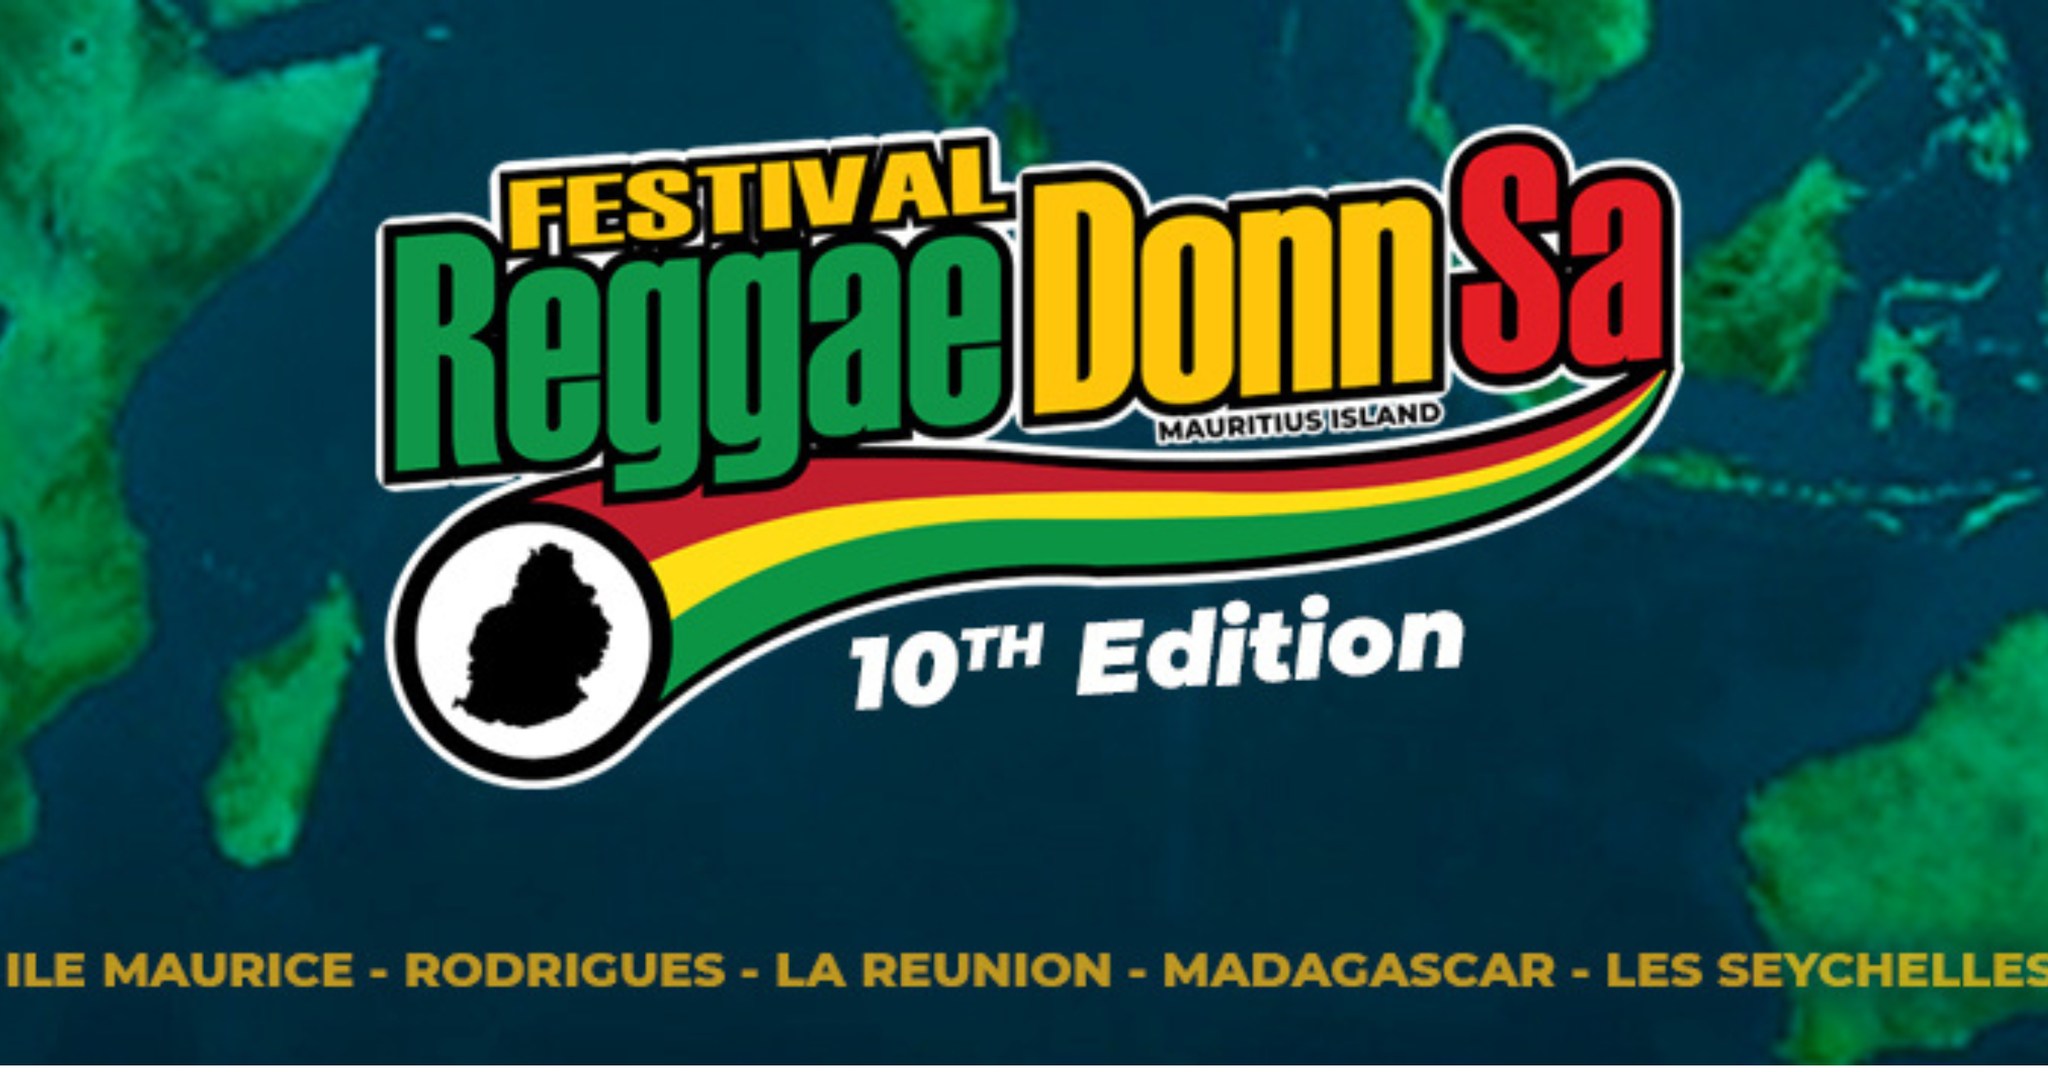 Festival de musique reggae, Week-end